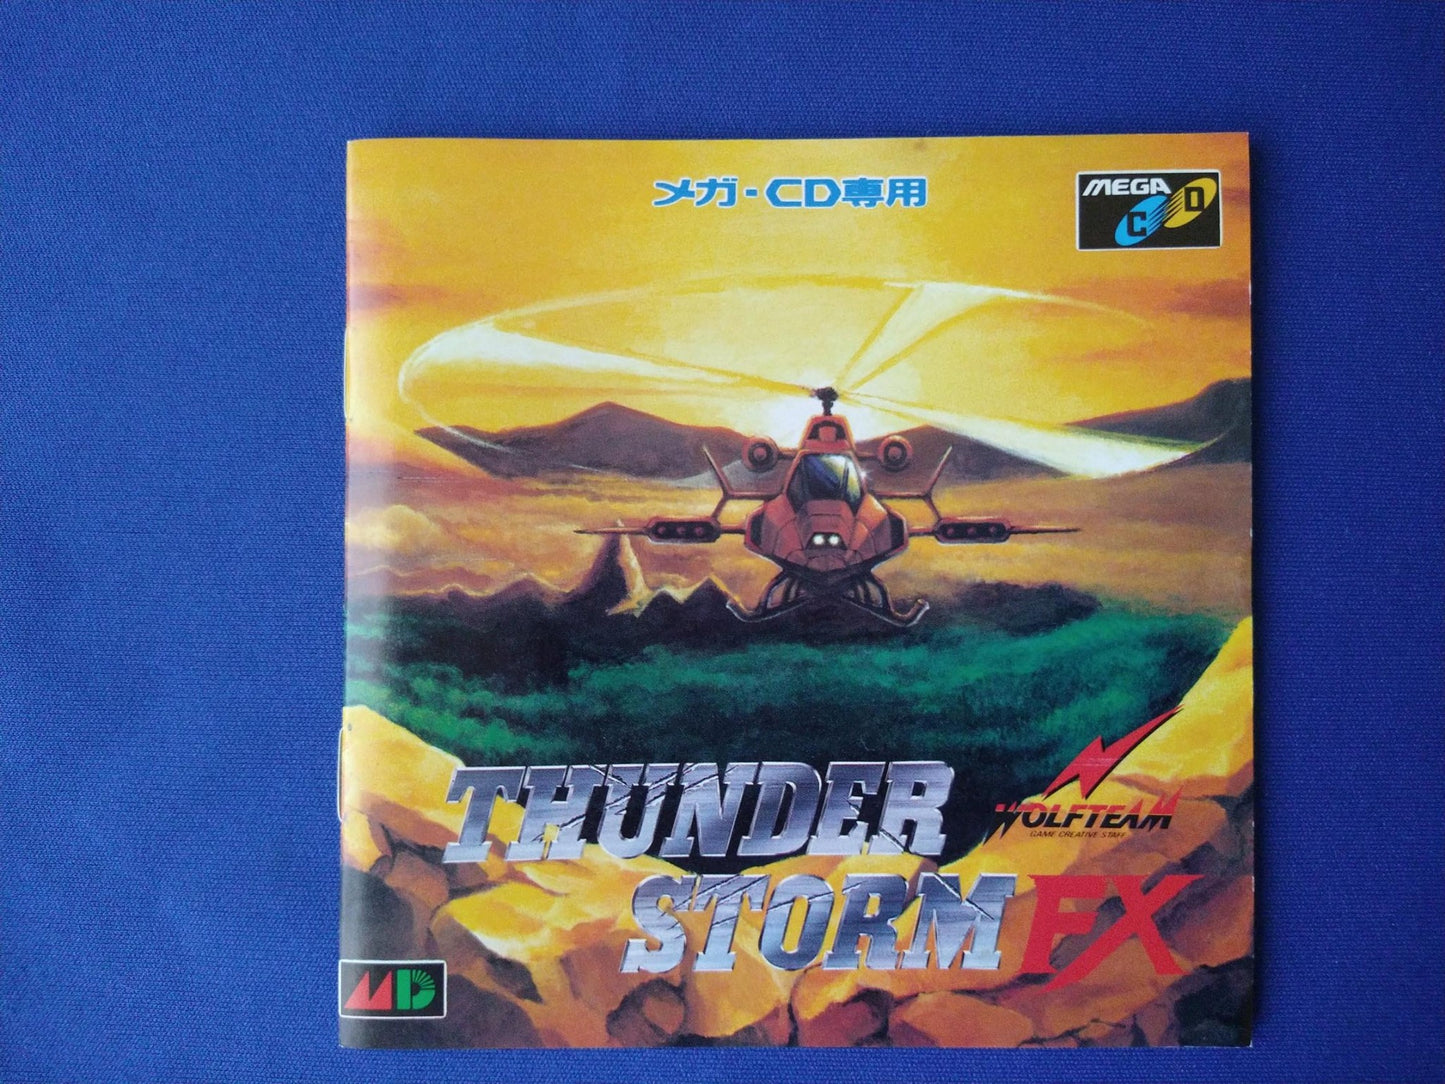 THUNDER STOM FX (Cobra Command) MEGA CD shooter game Boxed tested -f0524-